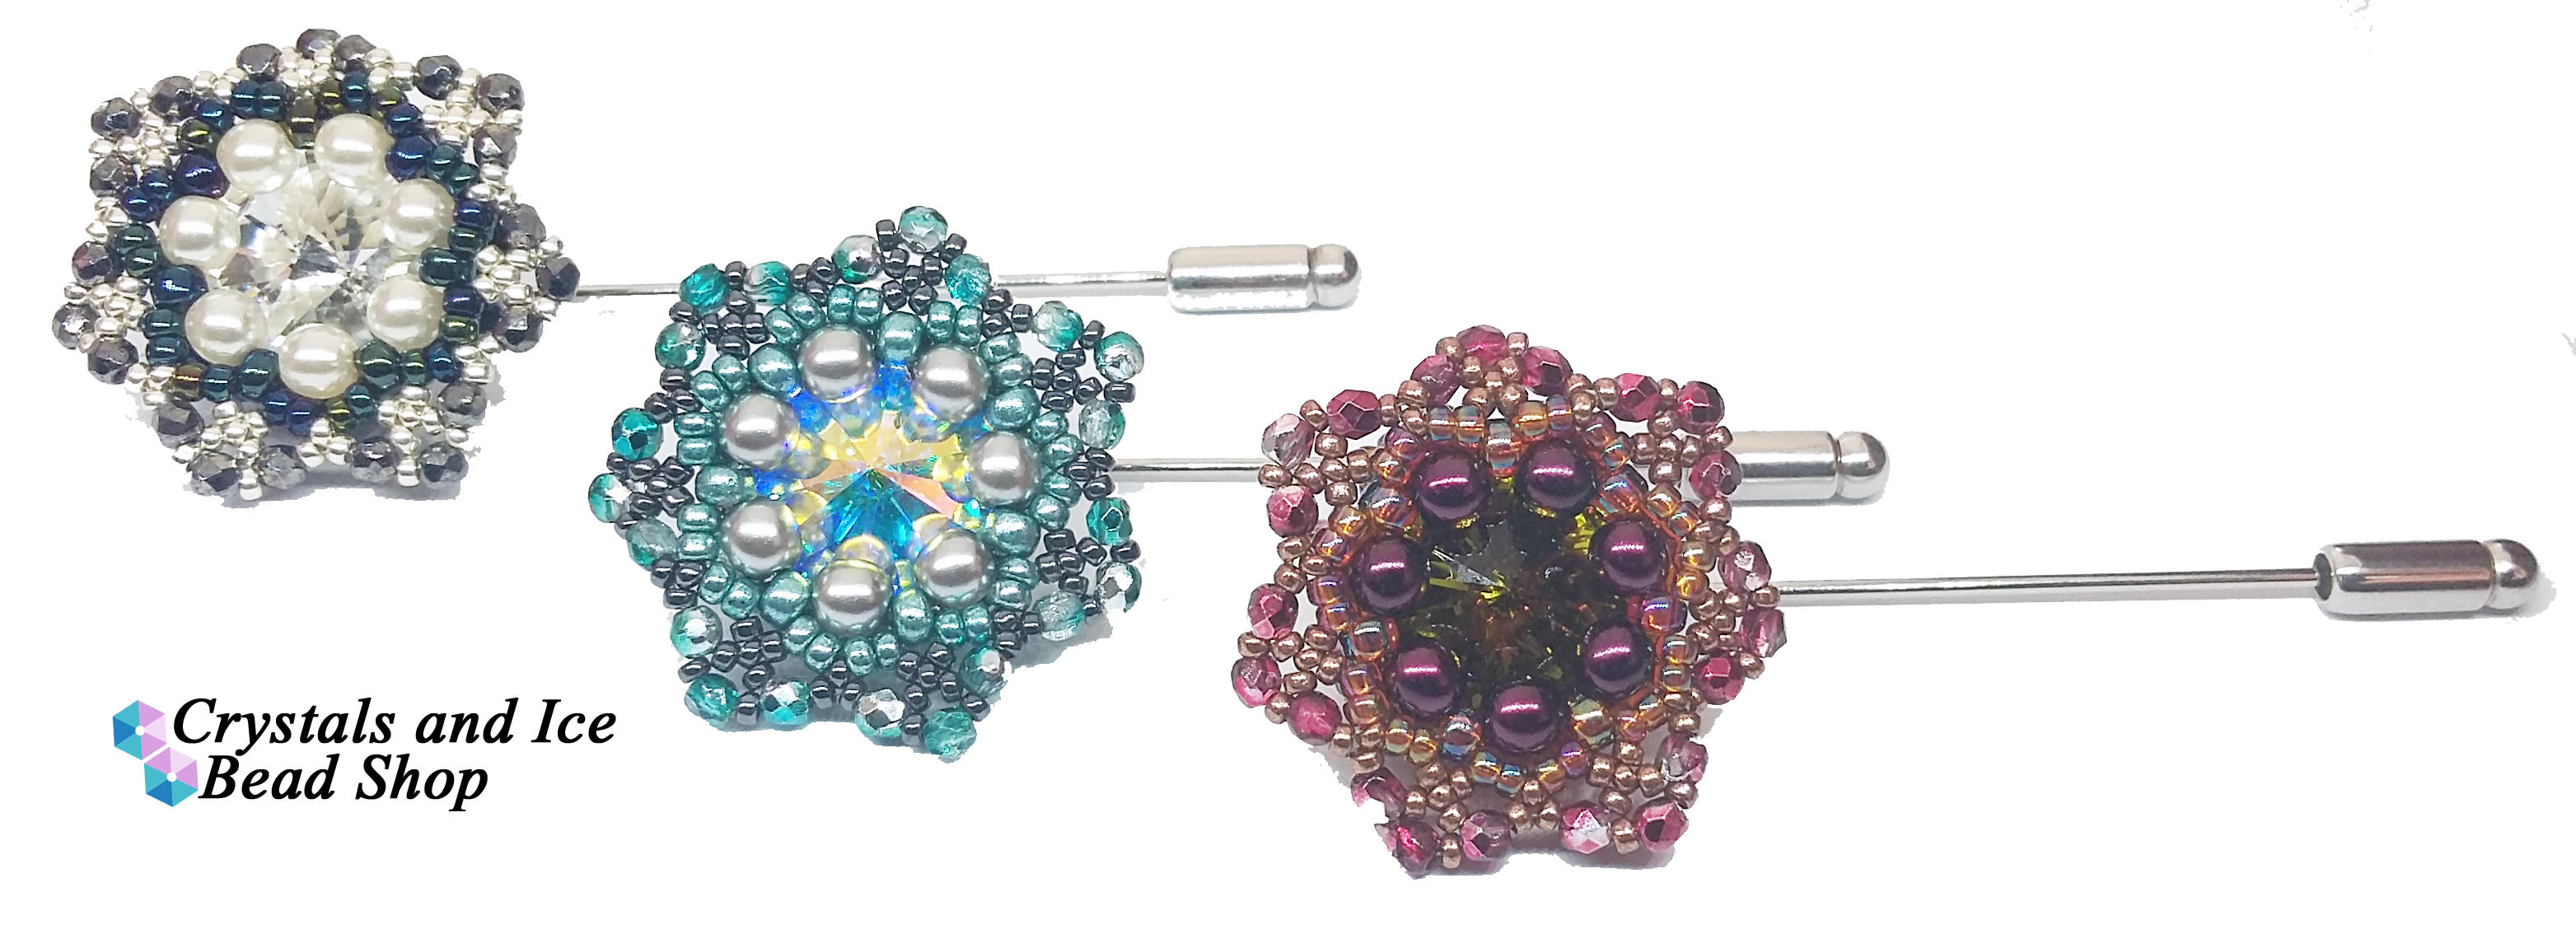 Star Flower Brooch Pin Kit - Kintana